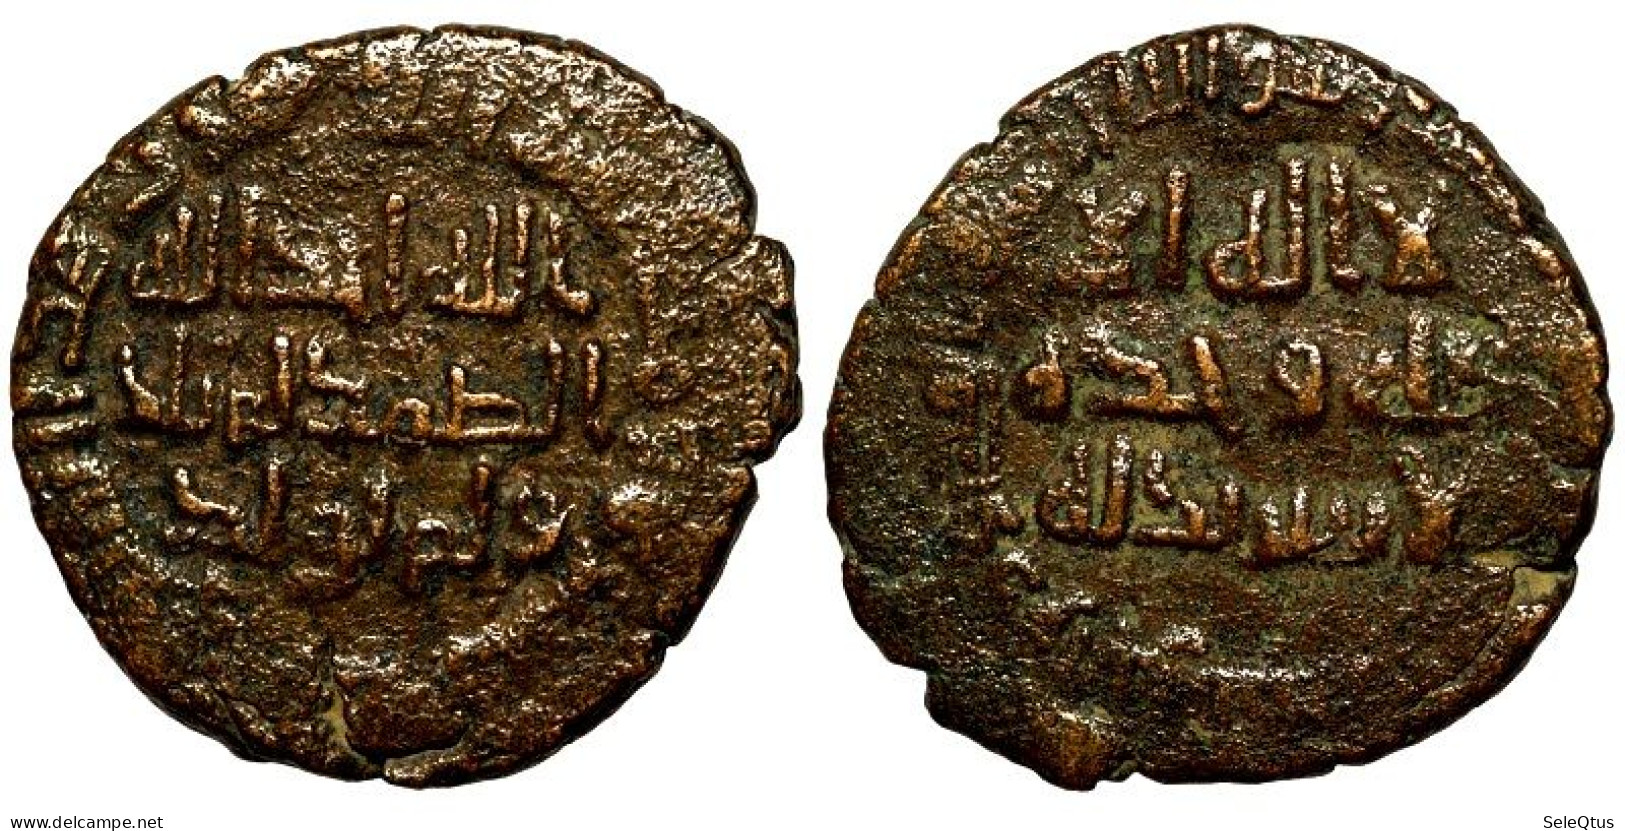 Monedas Antiguas - Ancient Coins (00113-002-1542) - Islámicas